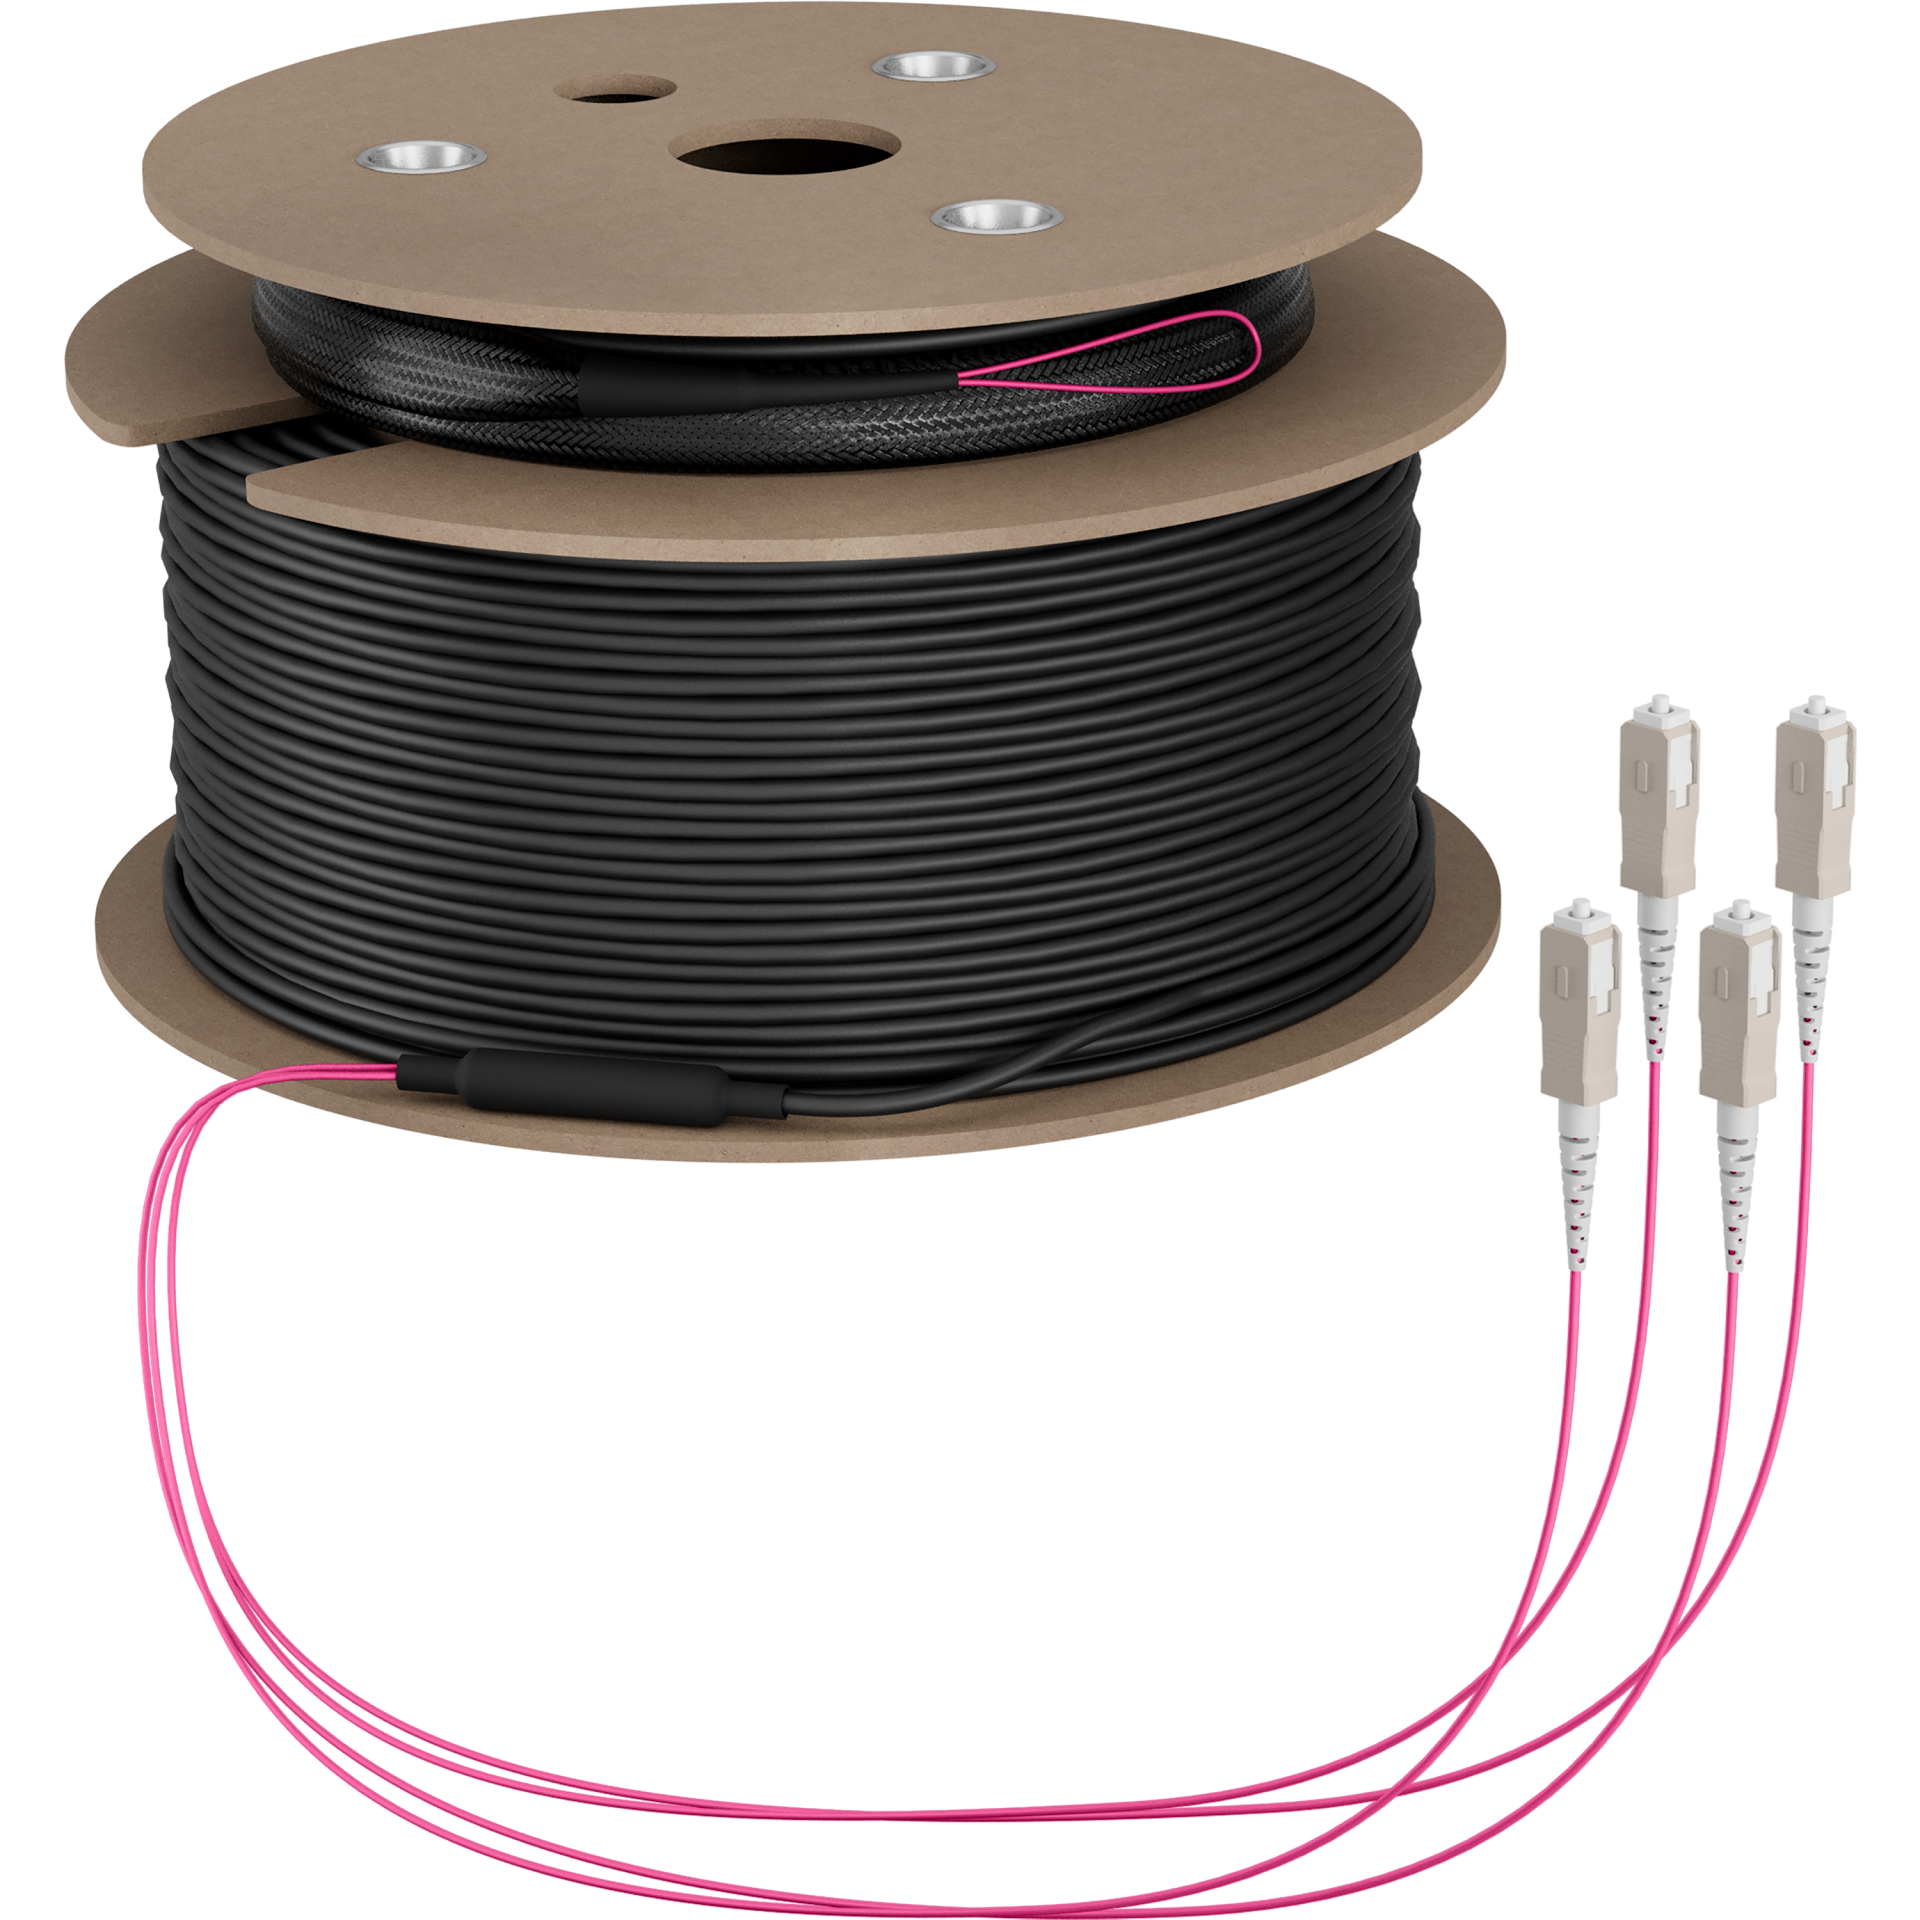 Trunk cable U-DQ(ZN)BH OM4 4G (1x4) SC-SC,160m Dca LSZH